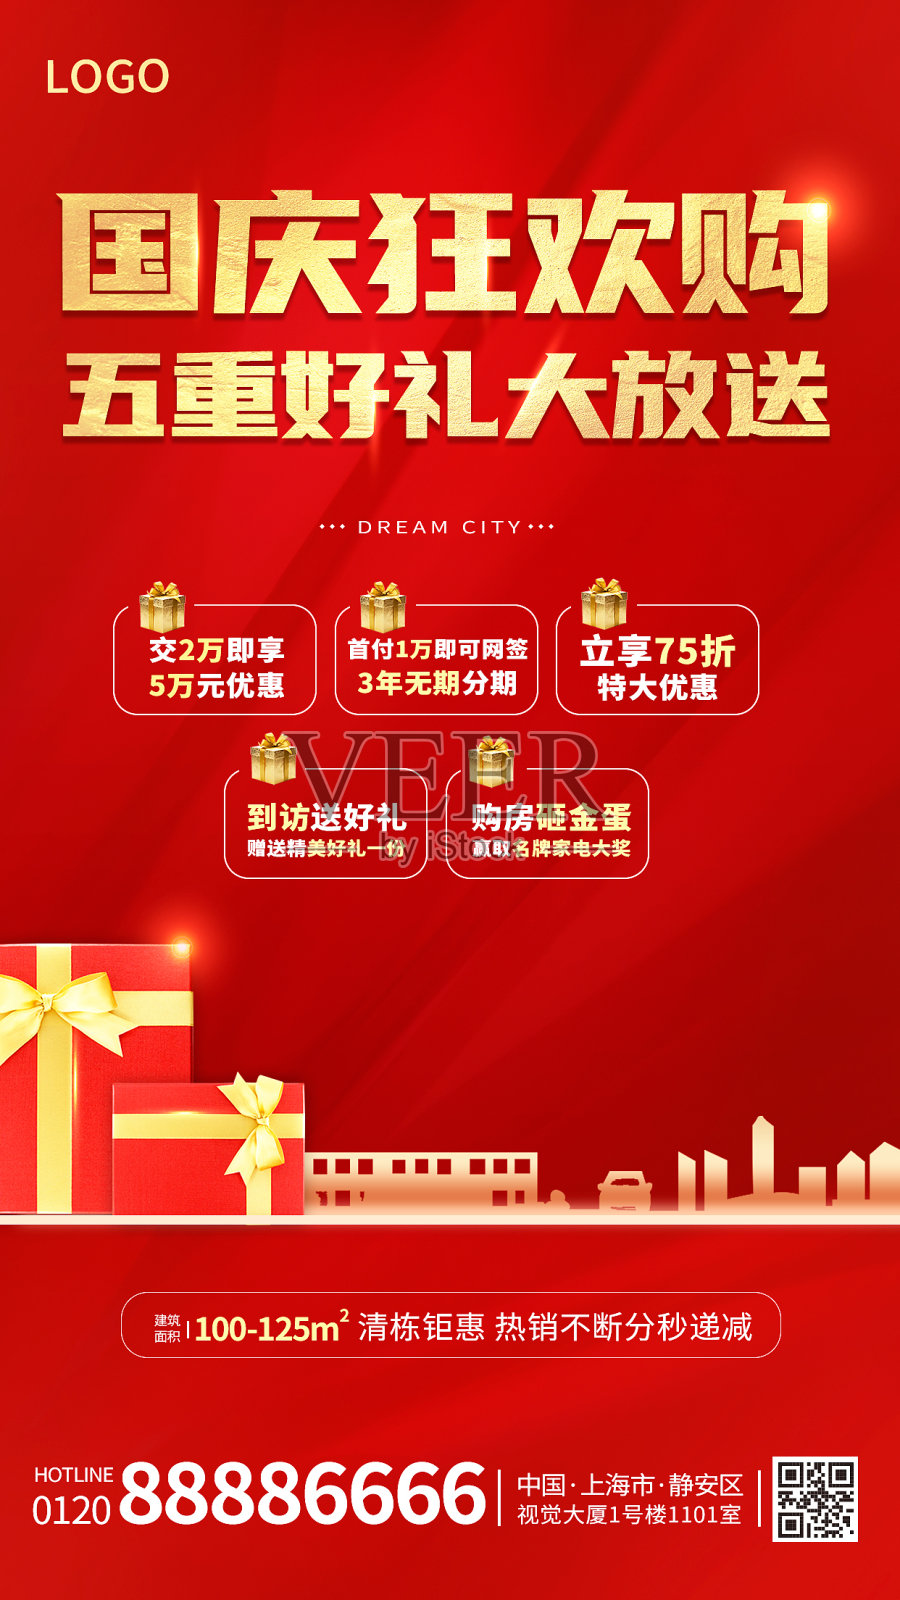 国庆节房地产促销活动红色大气手机海报设计模板素材